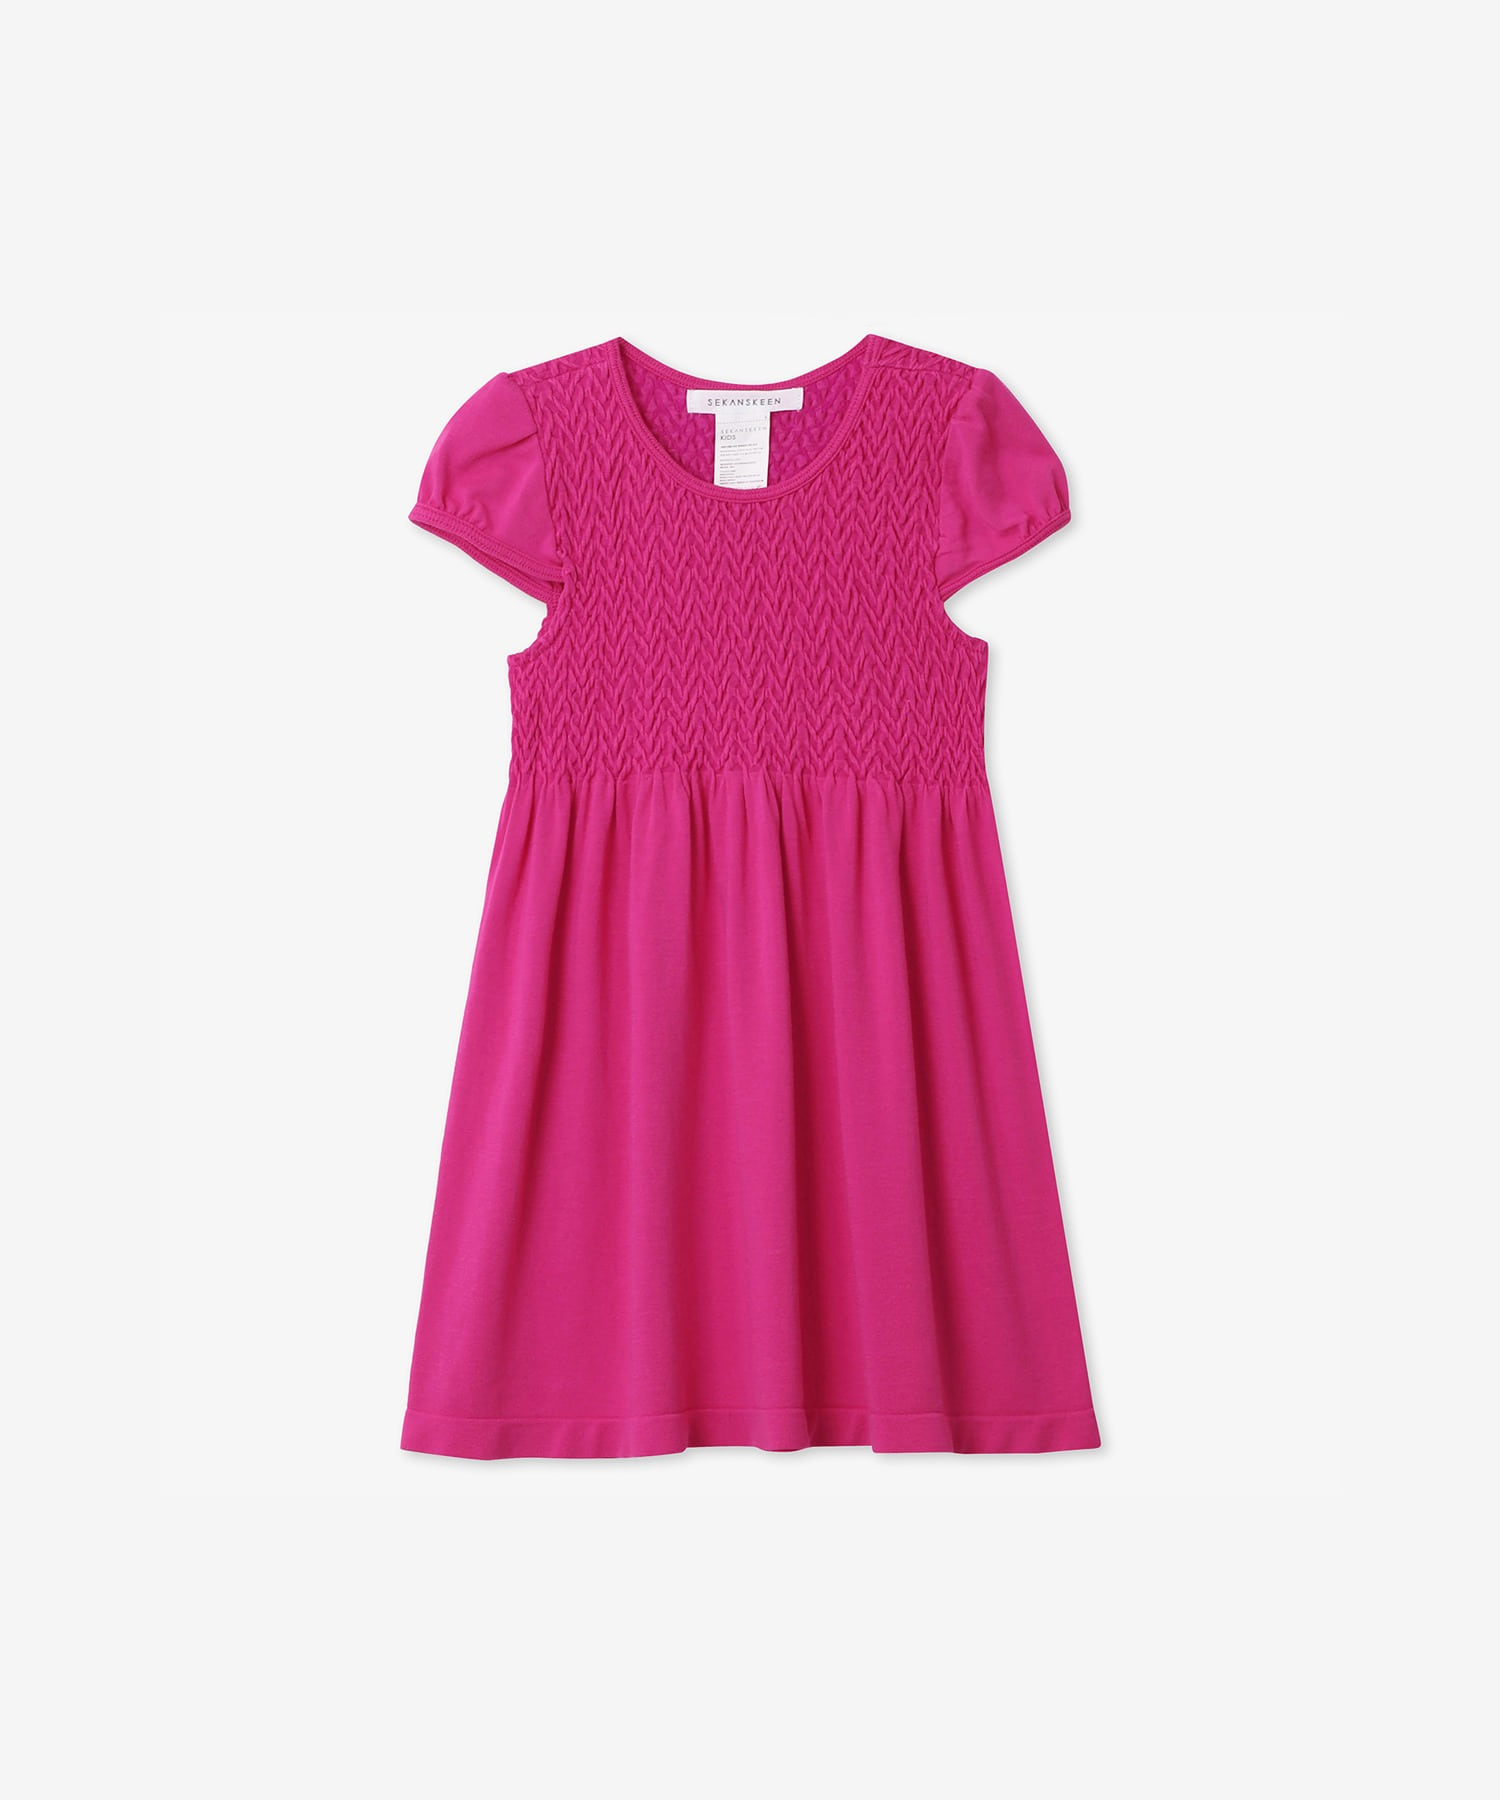 NEW 키즈 기본스마킹 2-3세 캡슬리브 드레스 SD4201